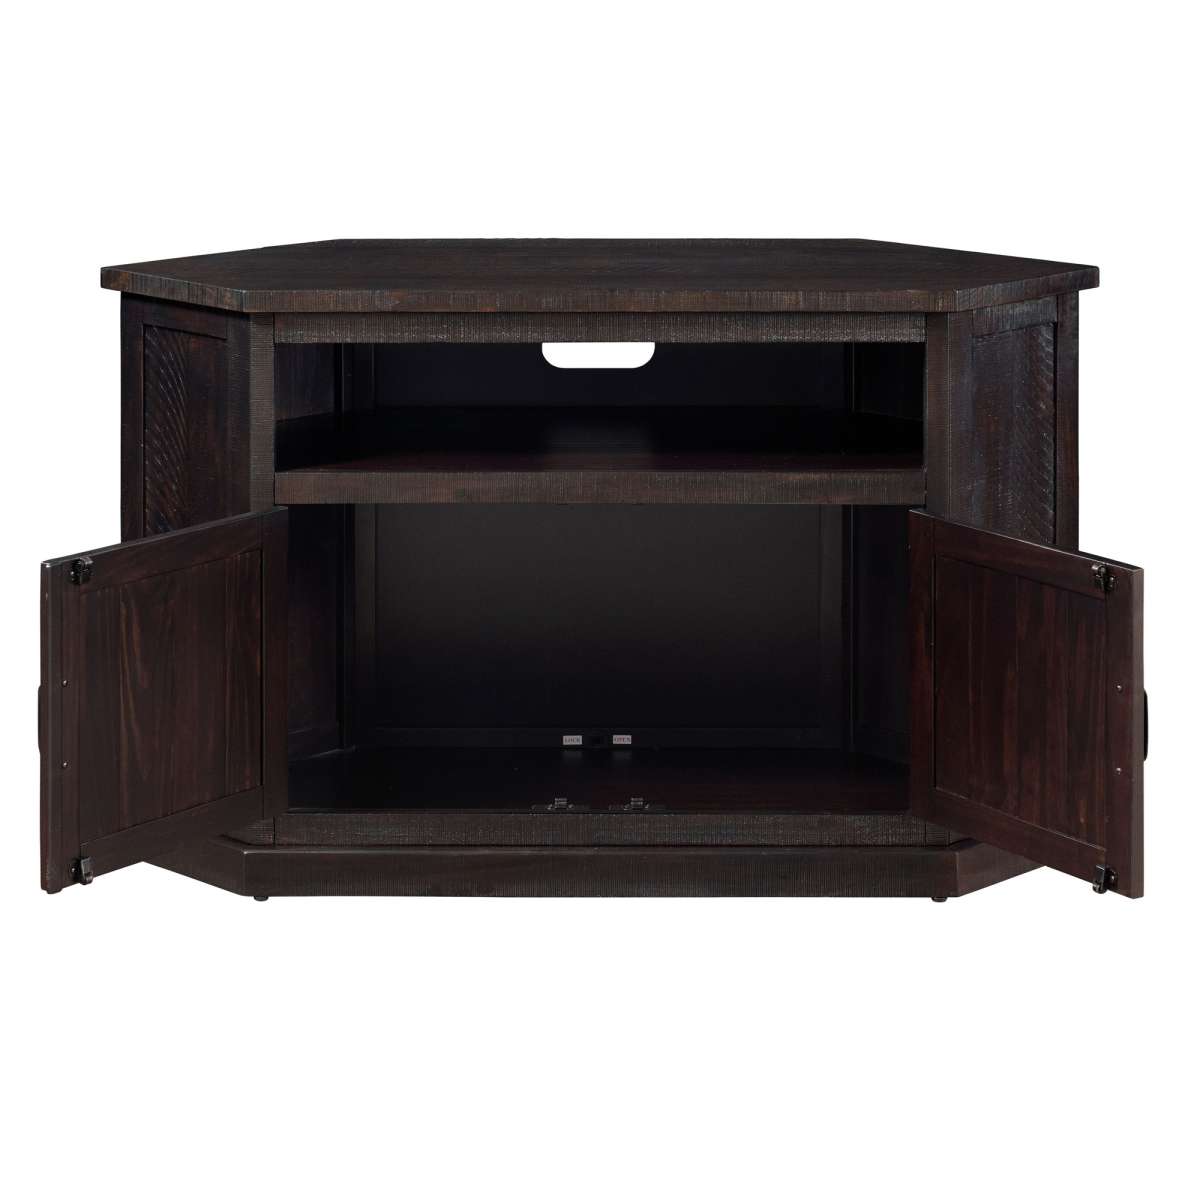 Rustic Wooden Corner Tv Stand With 2 Door Cabinet, Espresso Brown By Benzara | TV Stands |  Modishstore  - 2